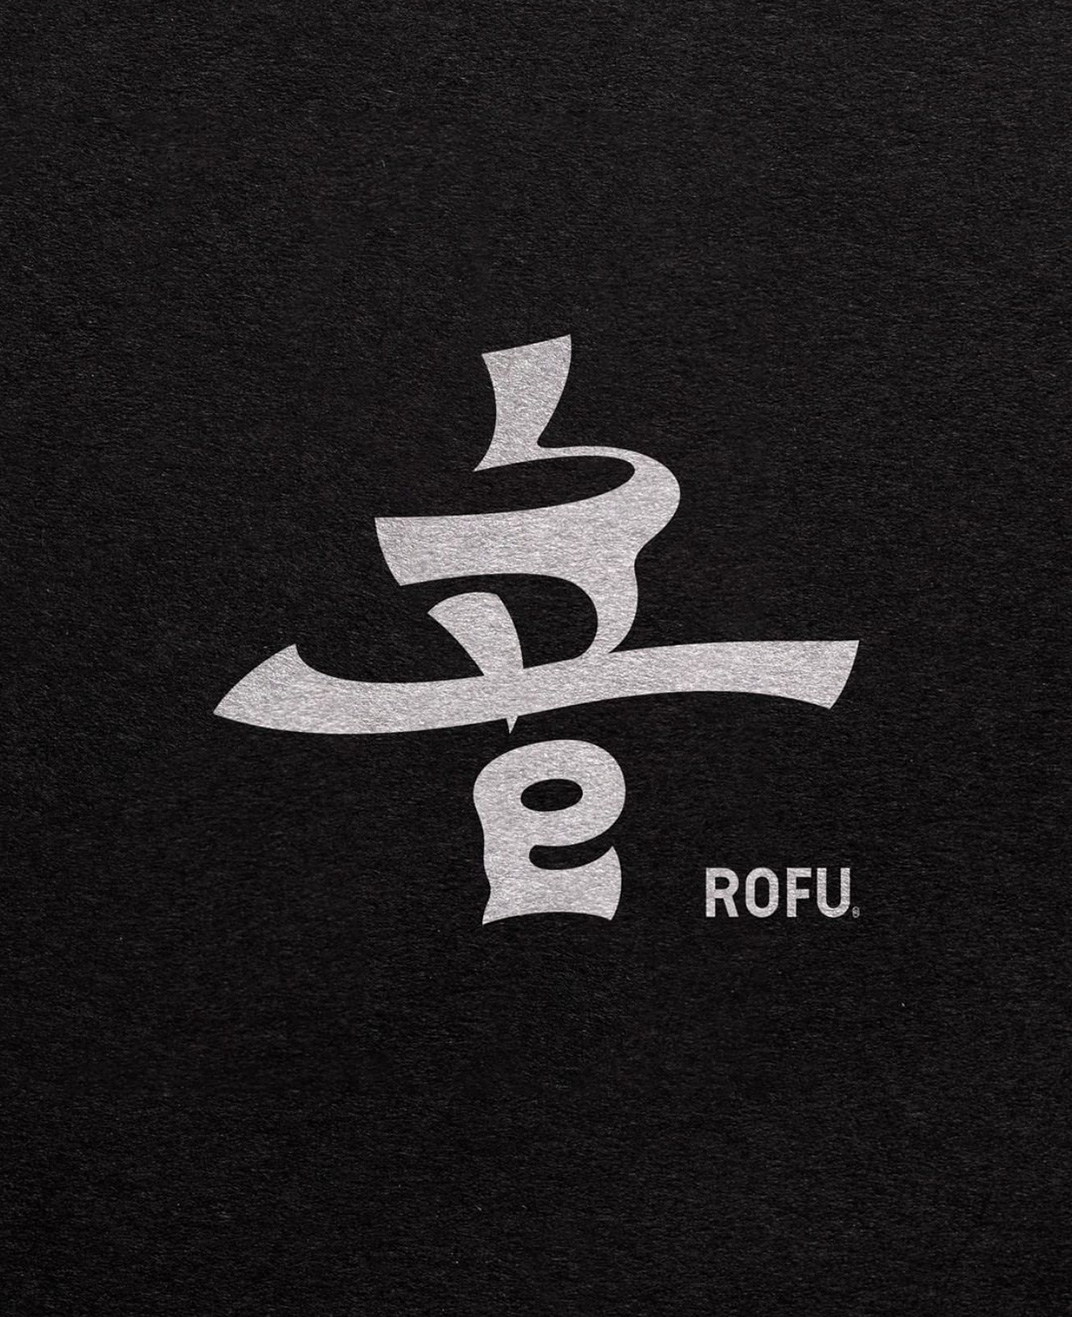 Rofu字体Logo设计 日本 上海 字体设计 符号设计 设计过程 logo设计 vi设计 空间设计